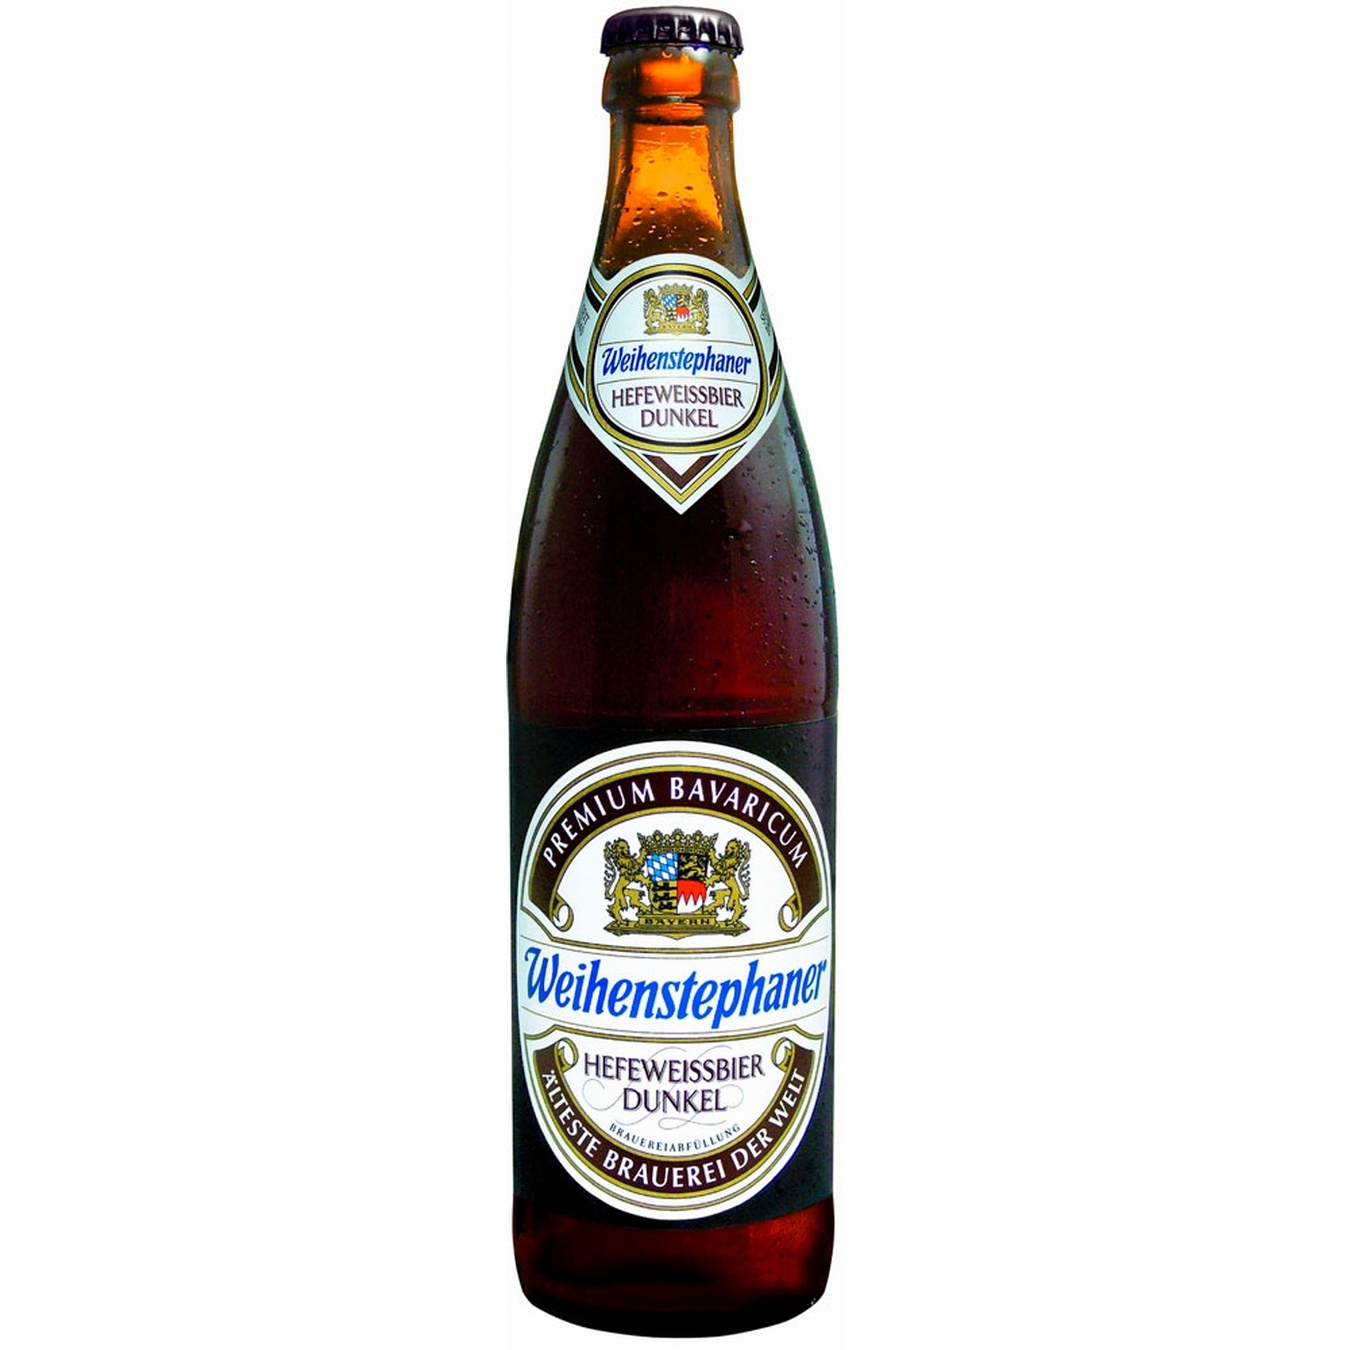 Пиво темное Weihenstephan Hefeweissbier Dunkel пшеничное 5,3% 0,5л стекло